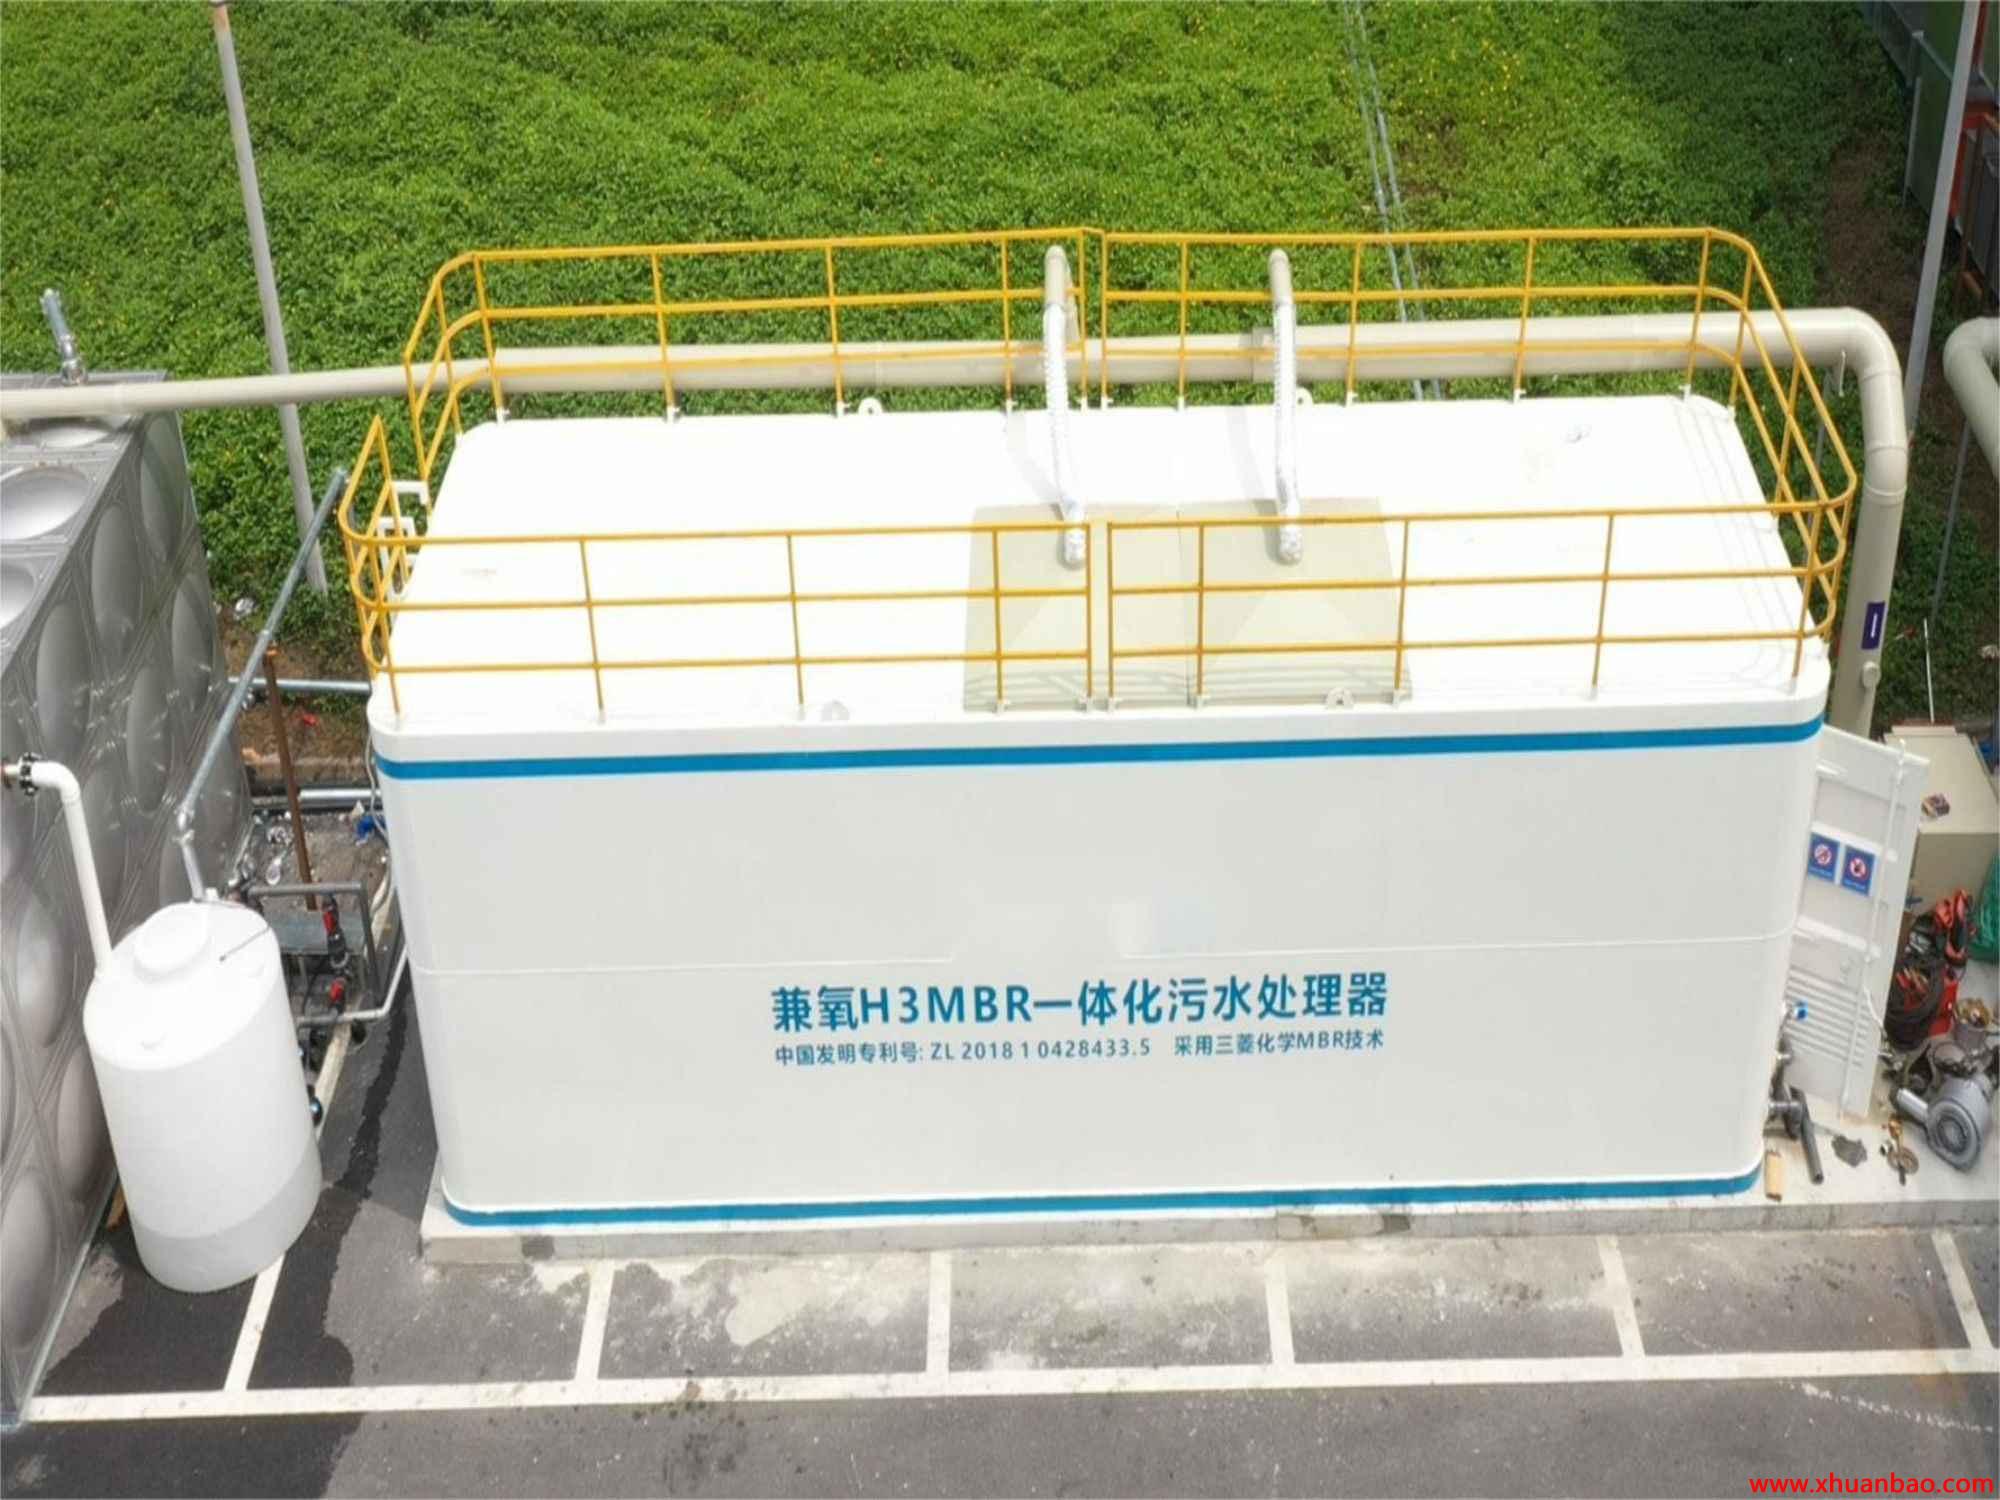 云南曲靖方舱医院建设污水处理设备 mbr一体化装置 自动控制